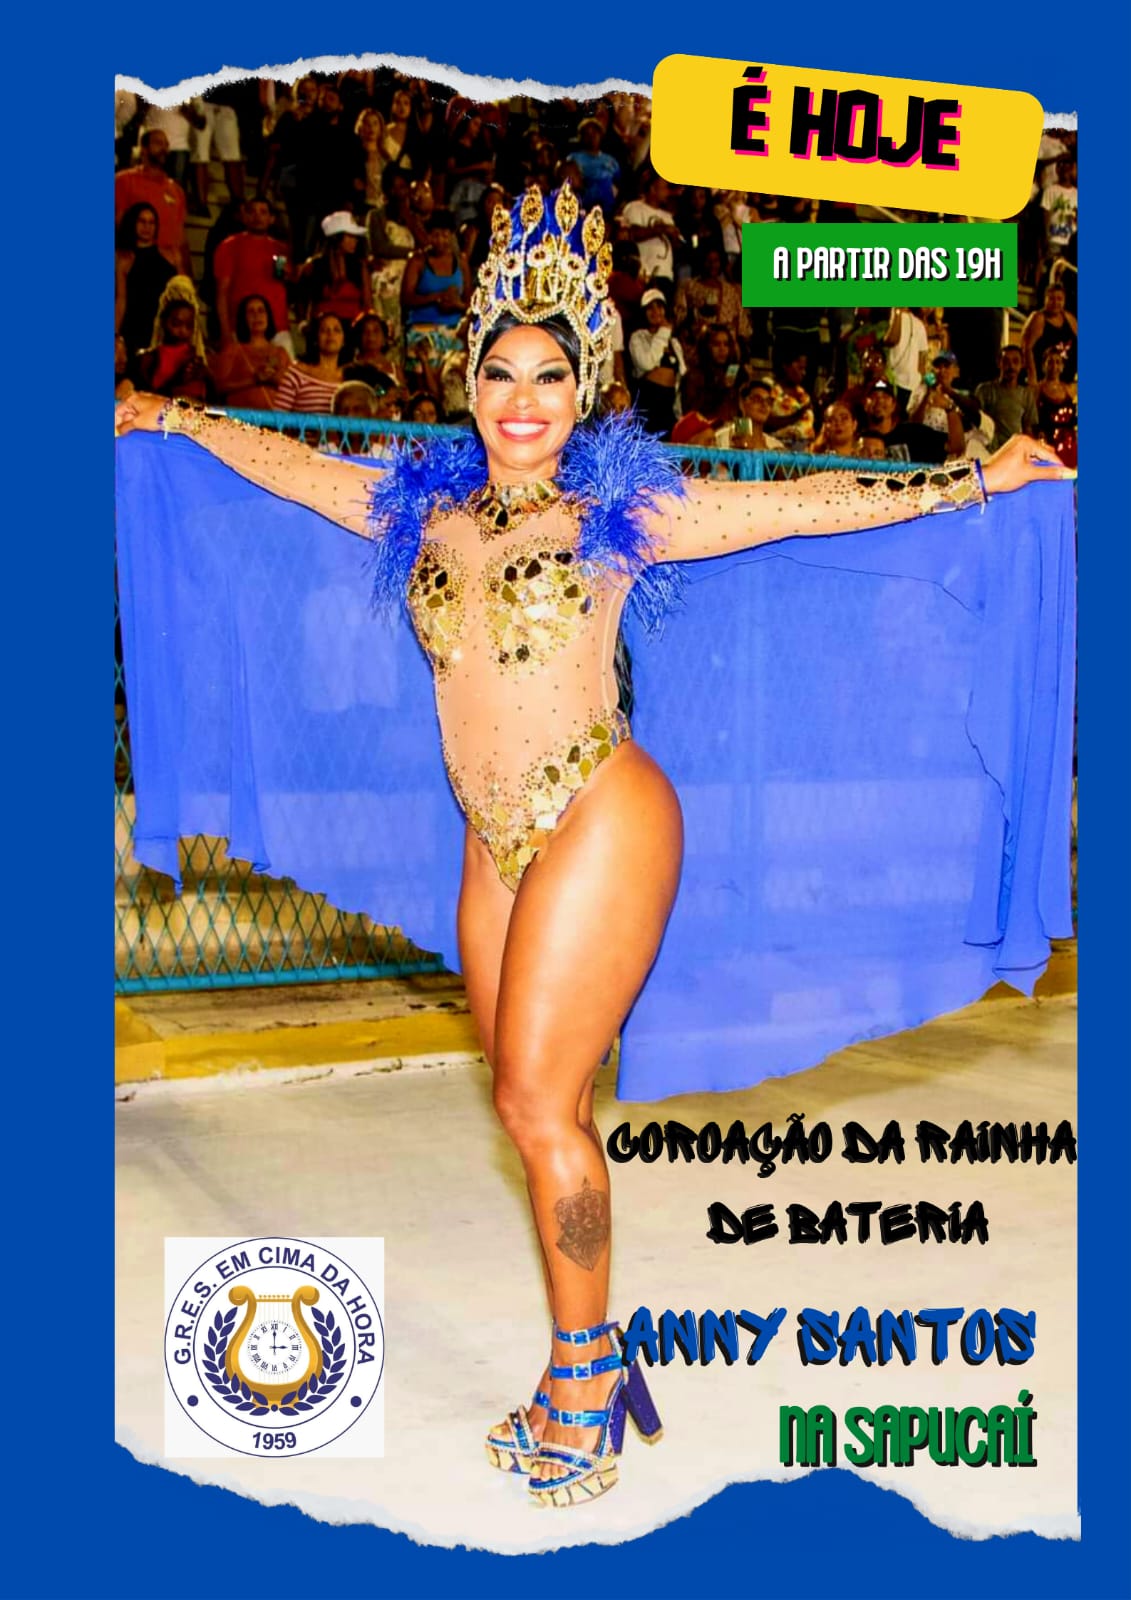 A Escola de Samba Em Cima da Hora promete agitar a Sapucaí e coroar a rainha de bateria durante o ensaio técnico